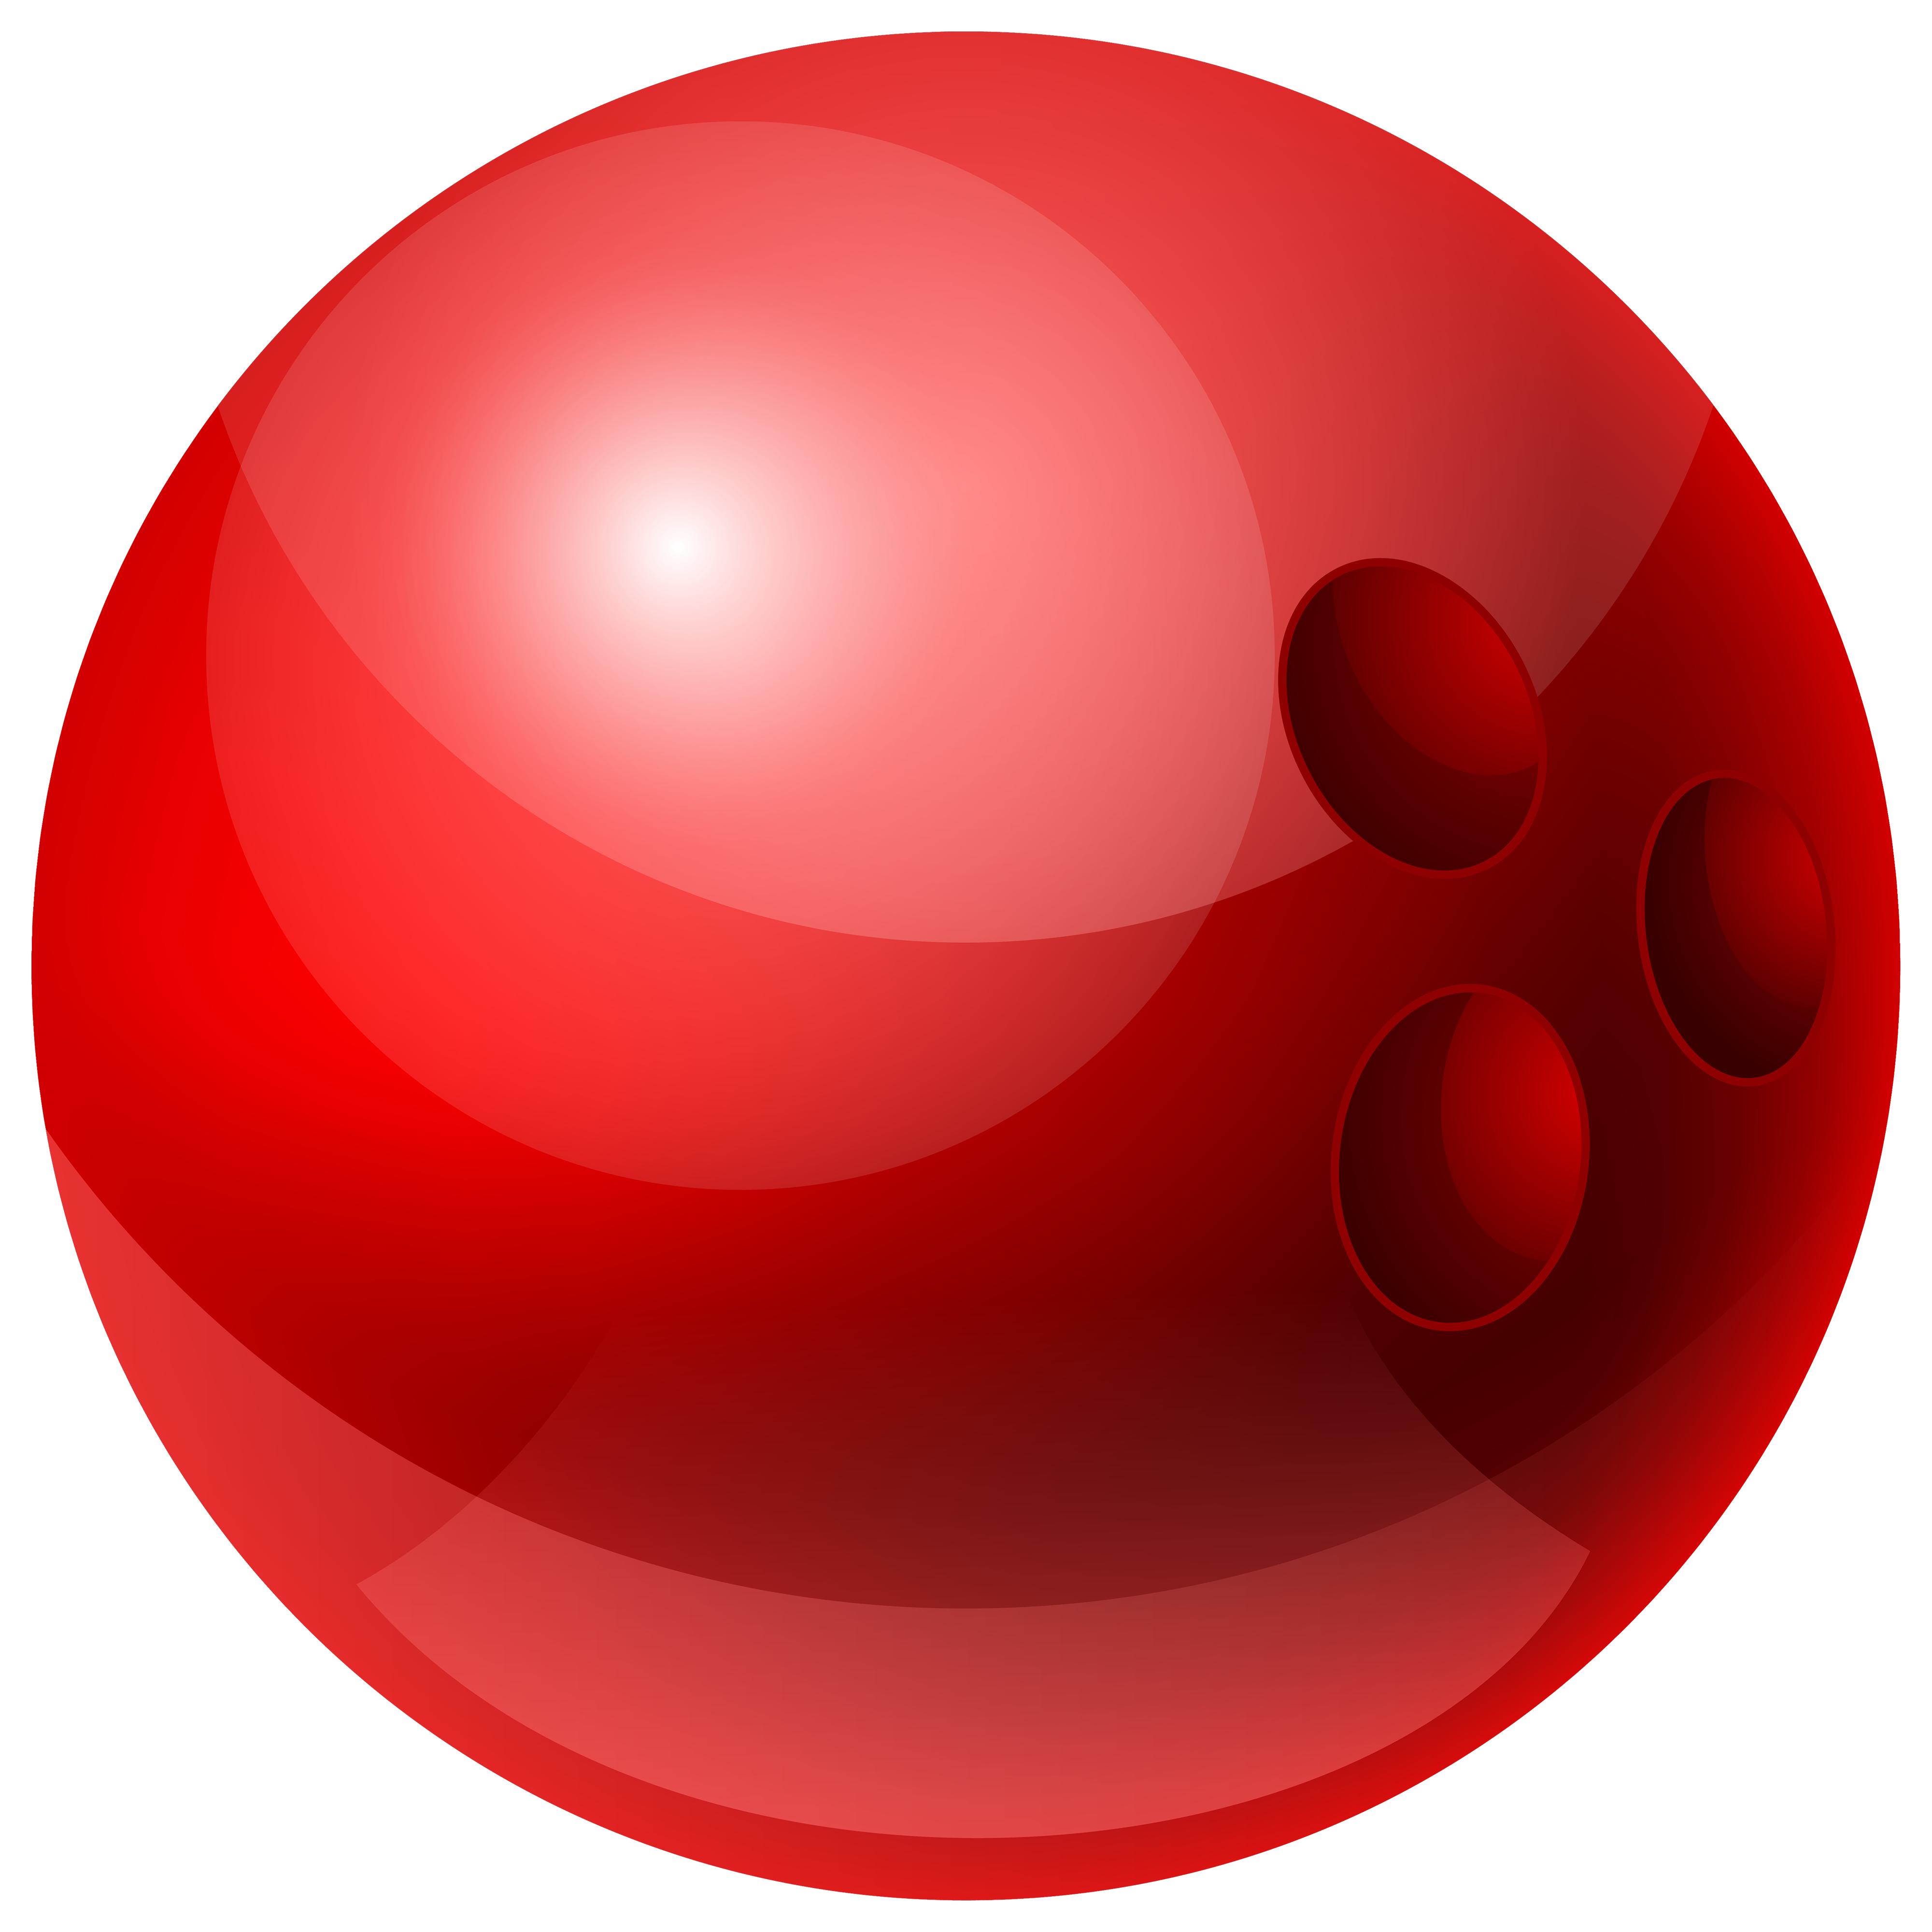 red ball clip art